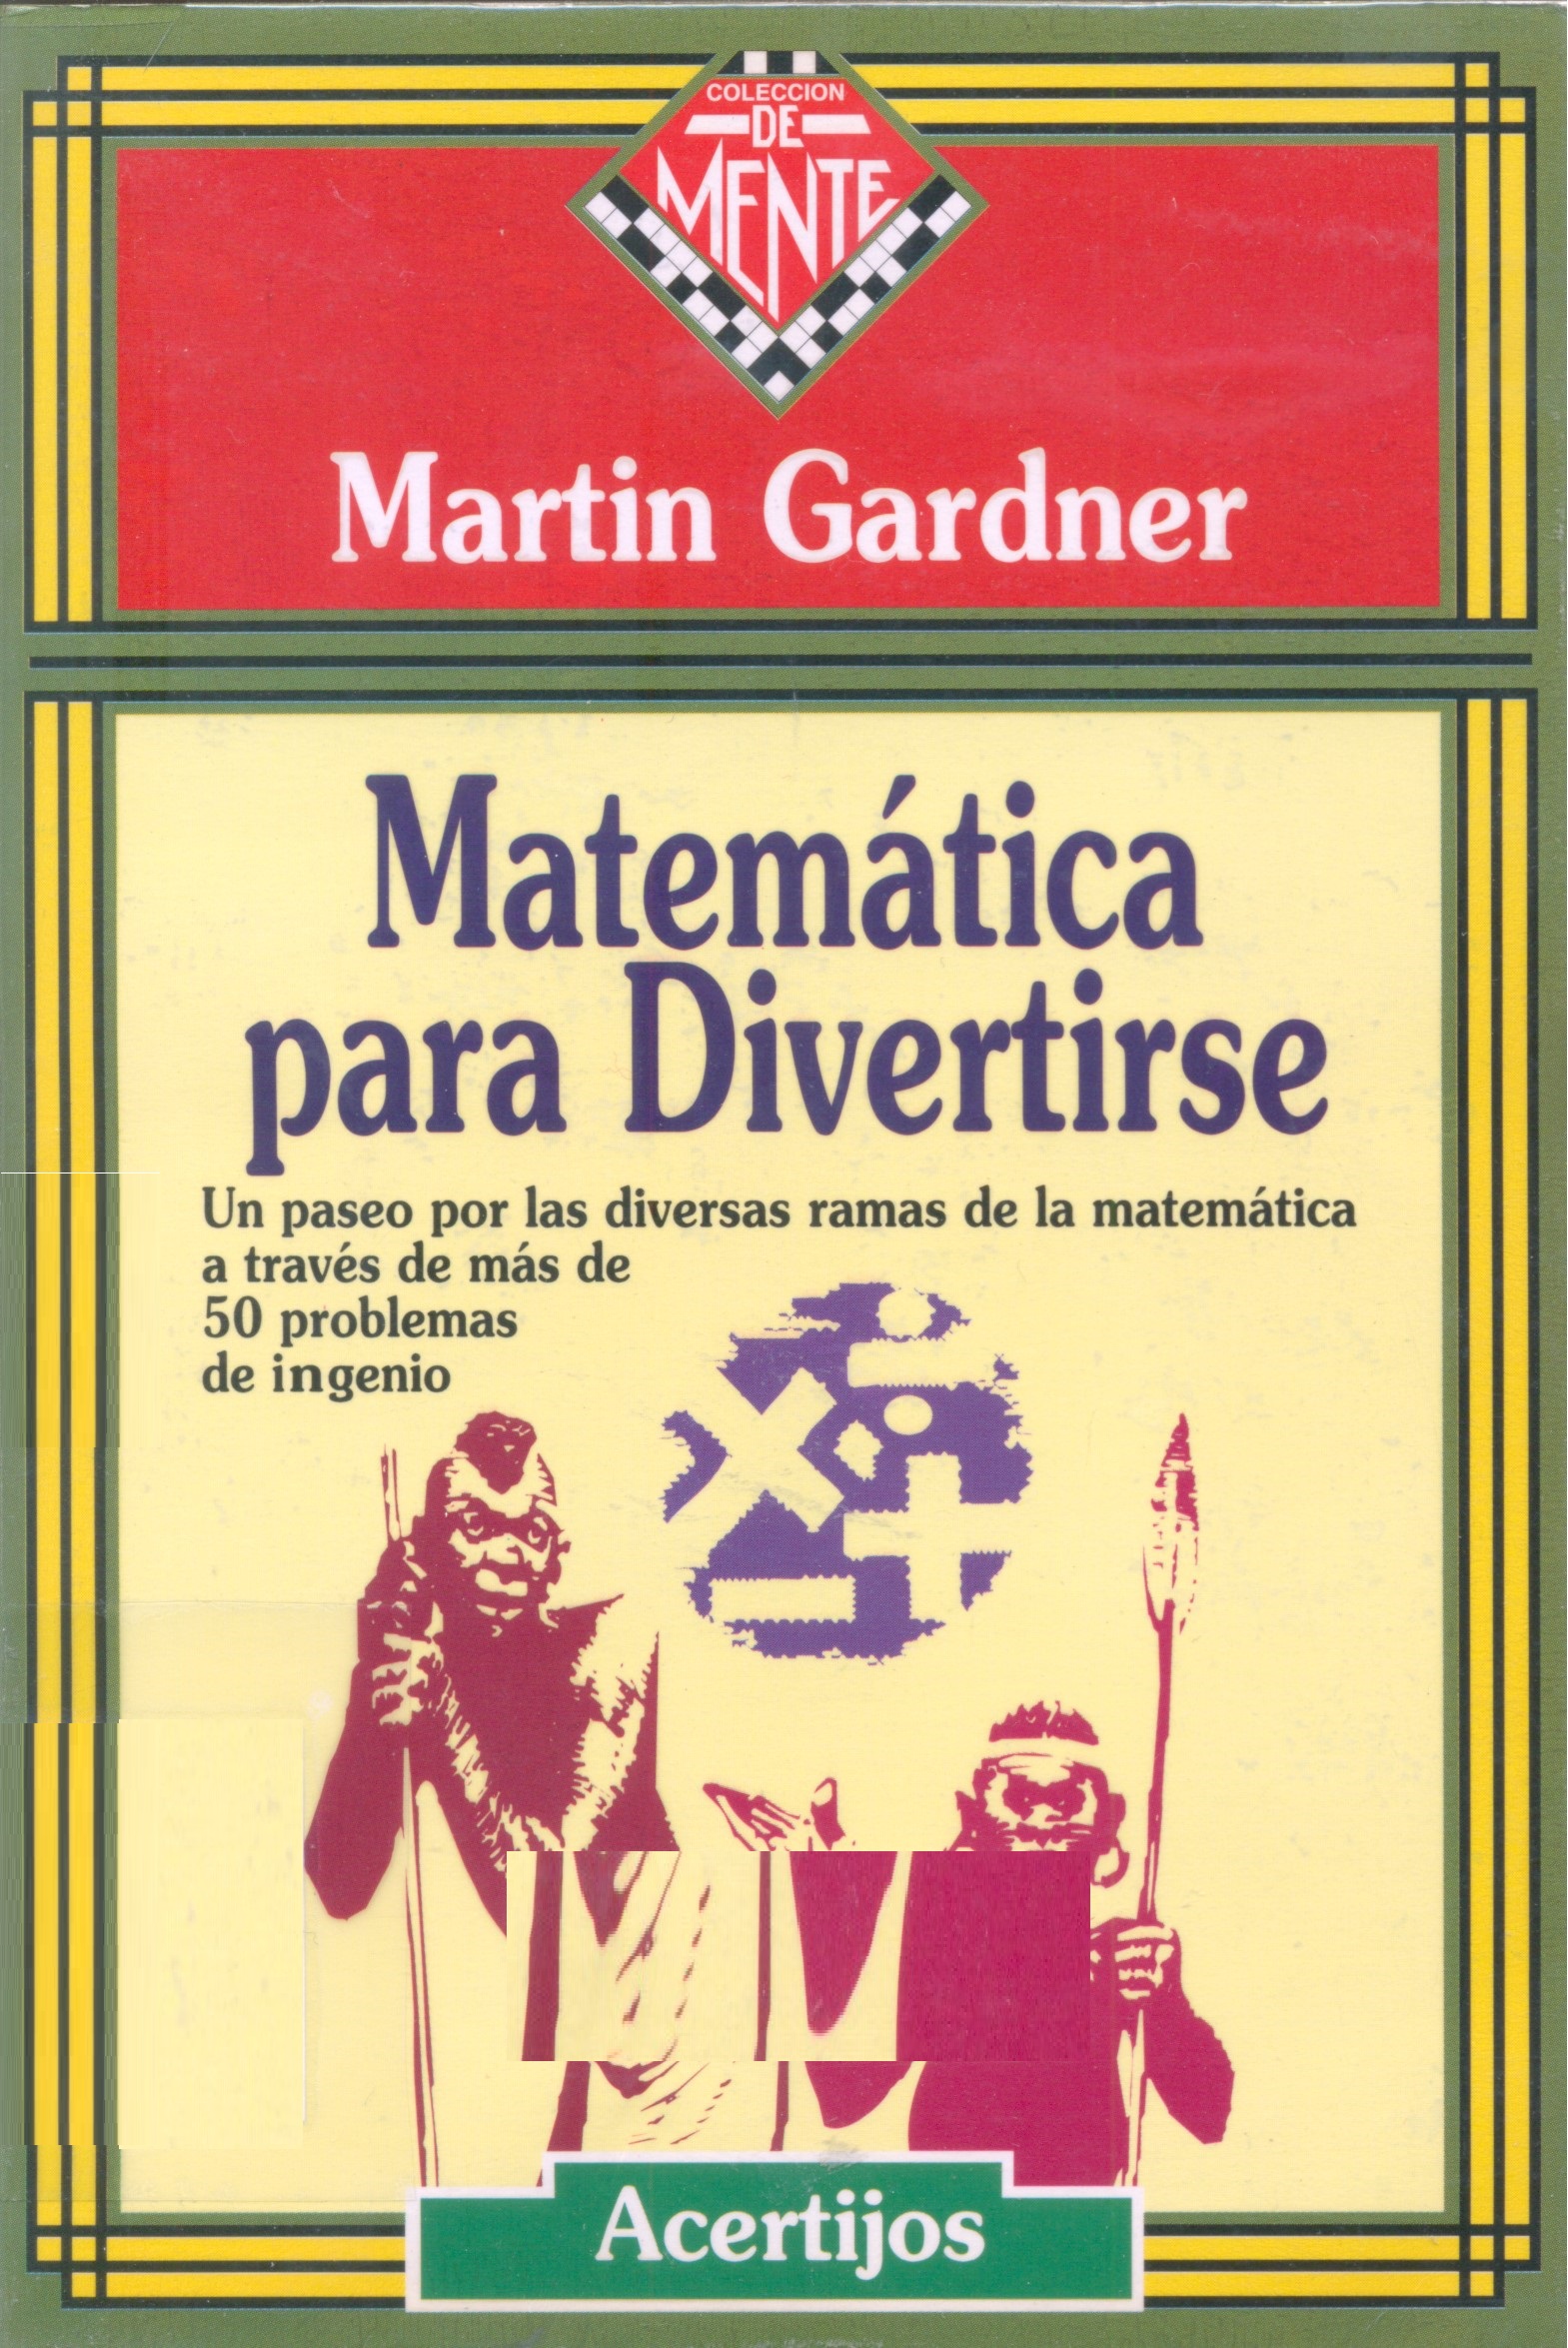 Matemática para divertirse / Martin Gardner ; ilustraciones de Anthony Ravielli ; [edición a cargo de Diego Uribe ; traducción: Mirta Rosenberg]